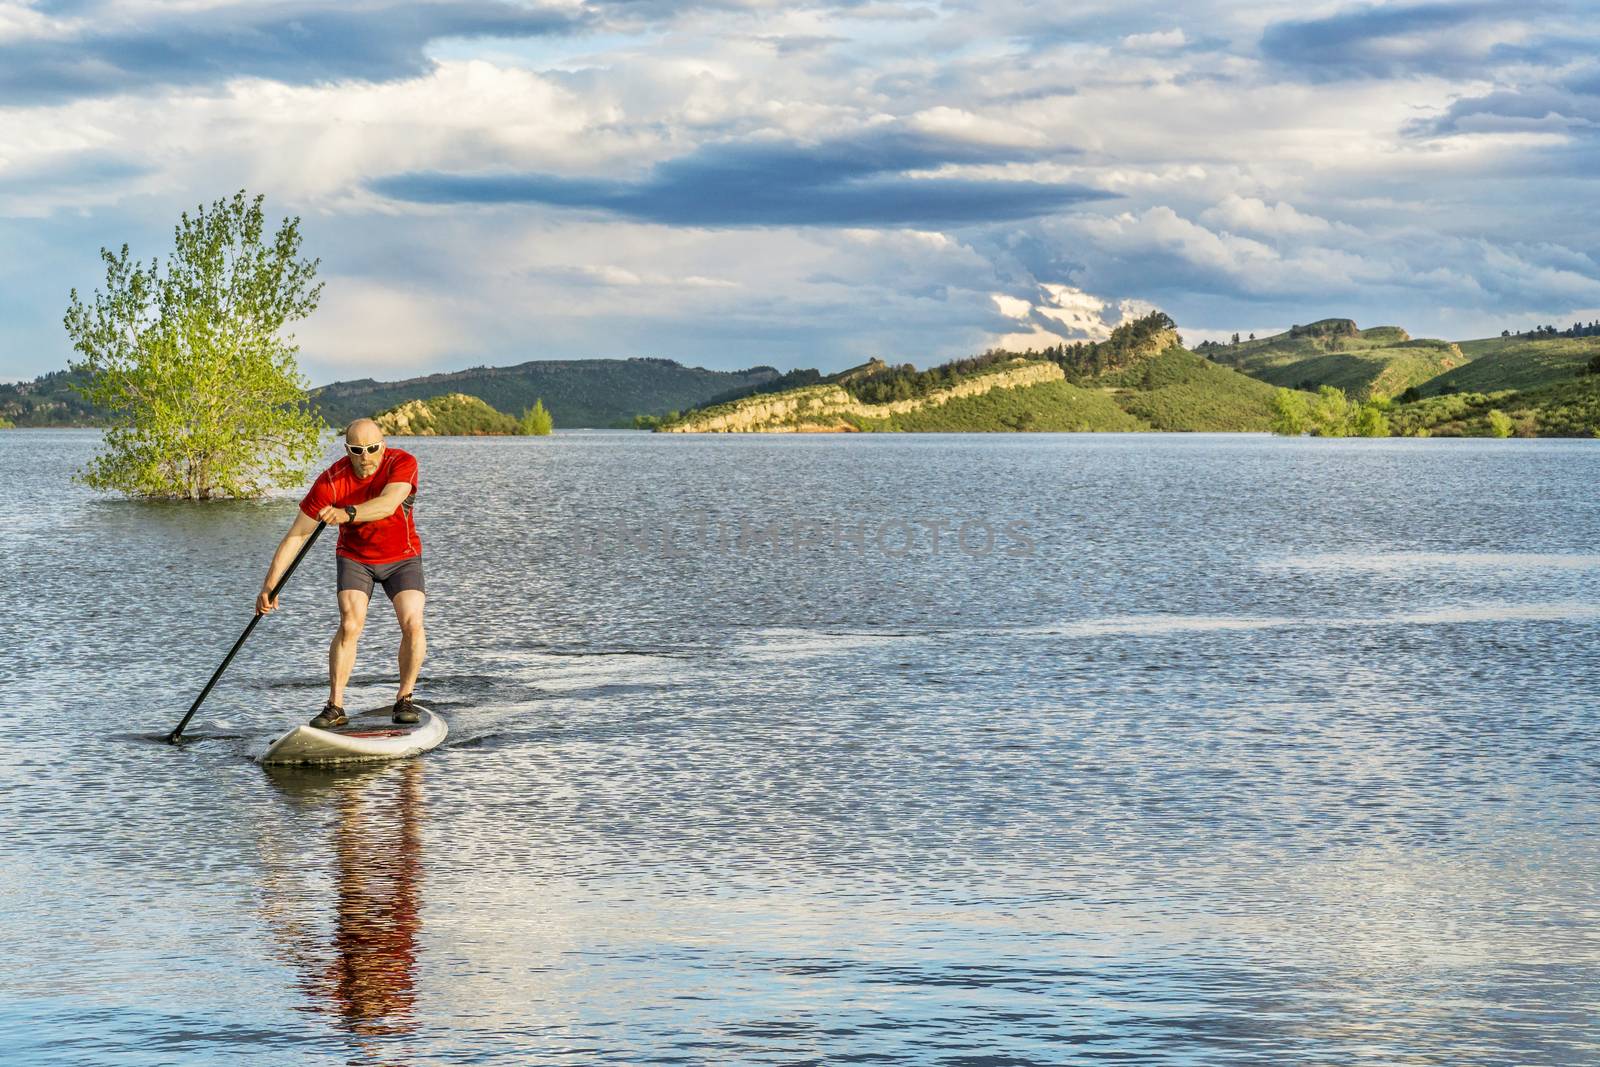  senior male SUP paddler on lake by PixelsAway